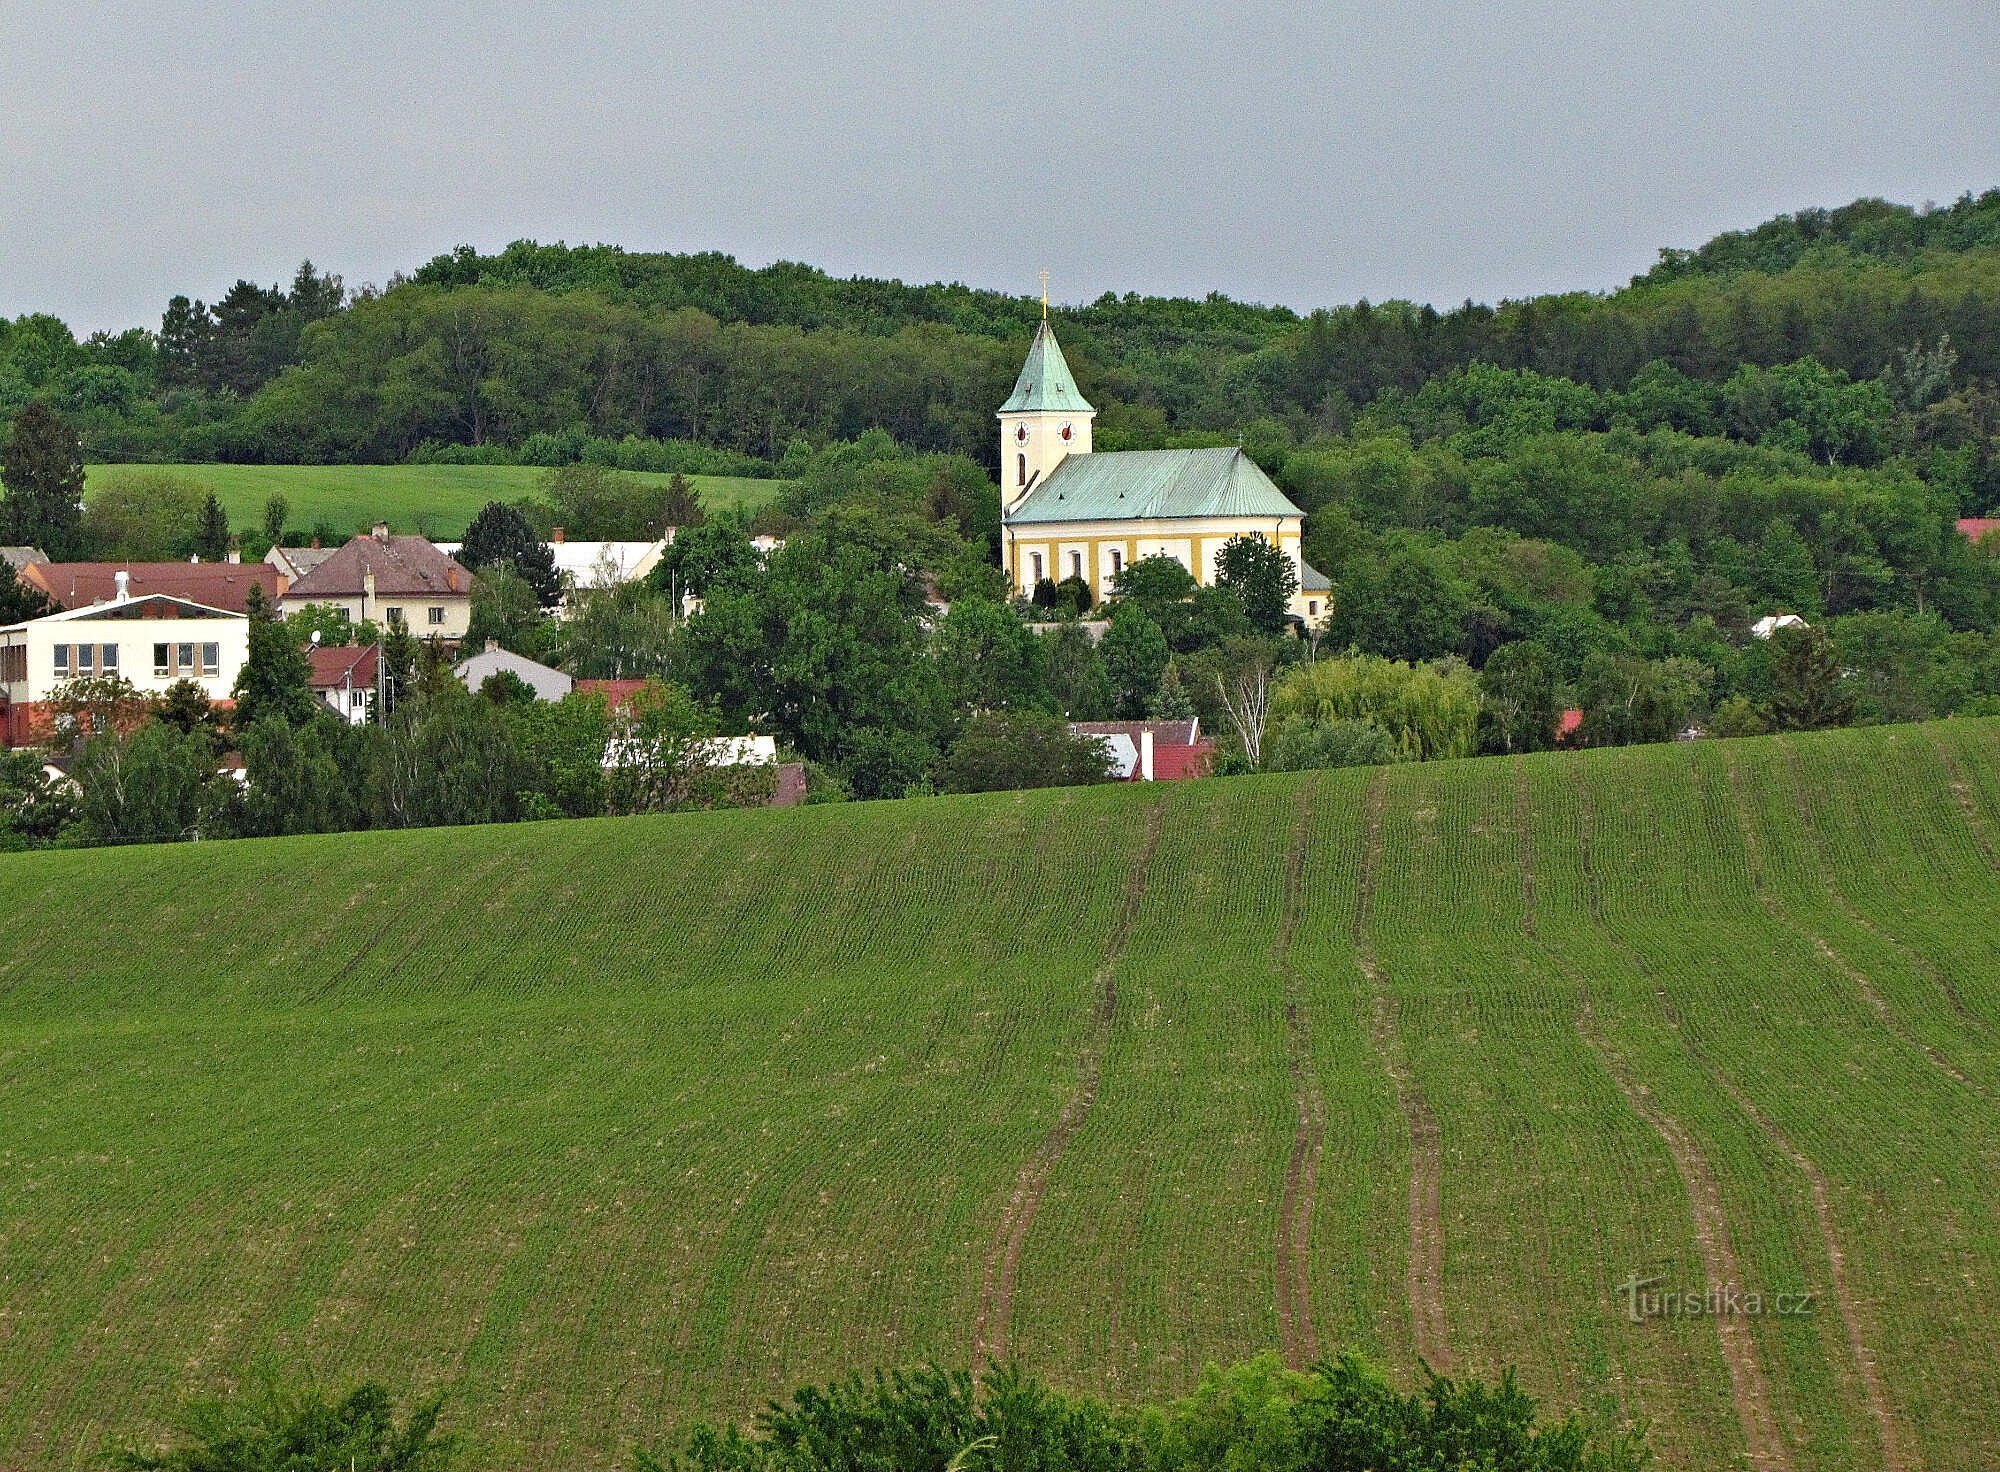 Kostelec nära Holešov - kyrkan St Peter och Paul